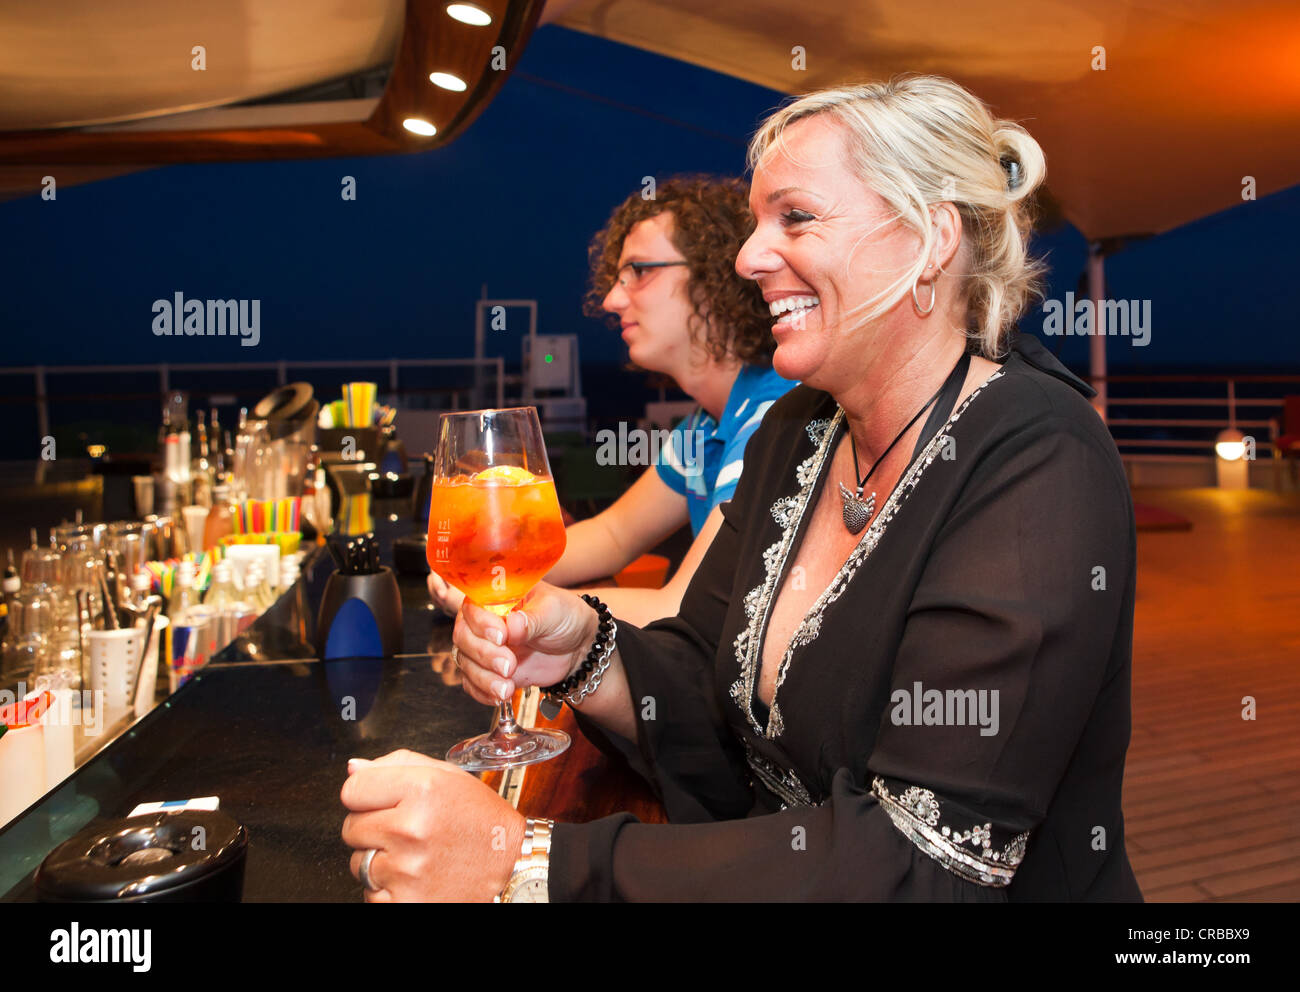 Aida Club Cruiser, Touristen mit einem Drink an der Bar, Mallorca, Spanien, Europa - Achtung: beschränkte Nutzungsrecht! Bitte Stockfoto